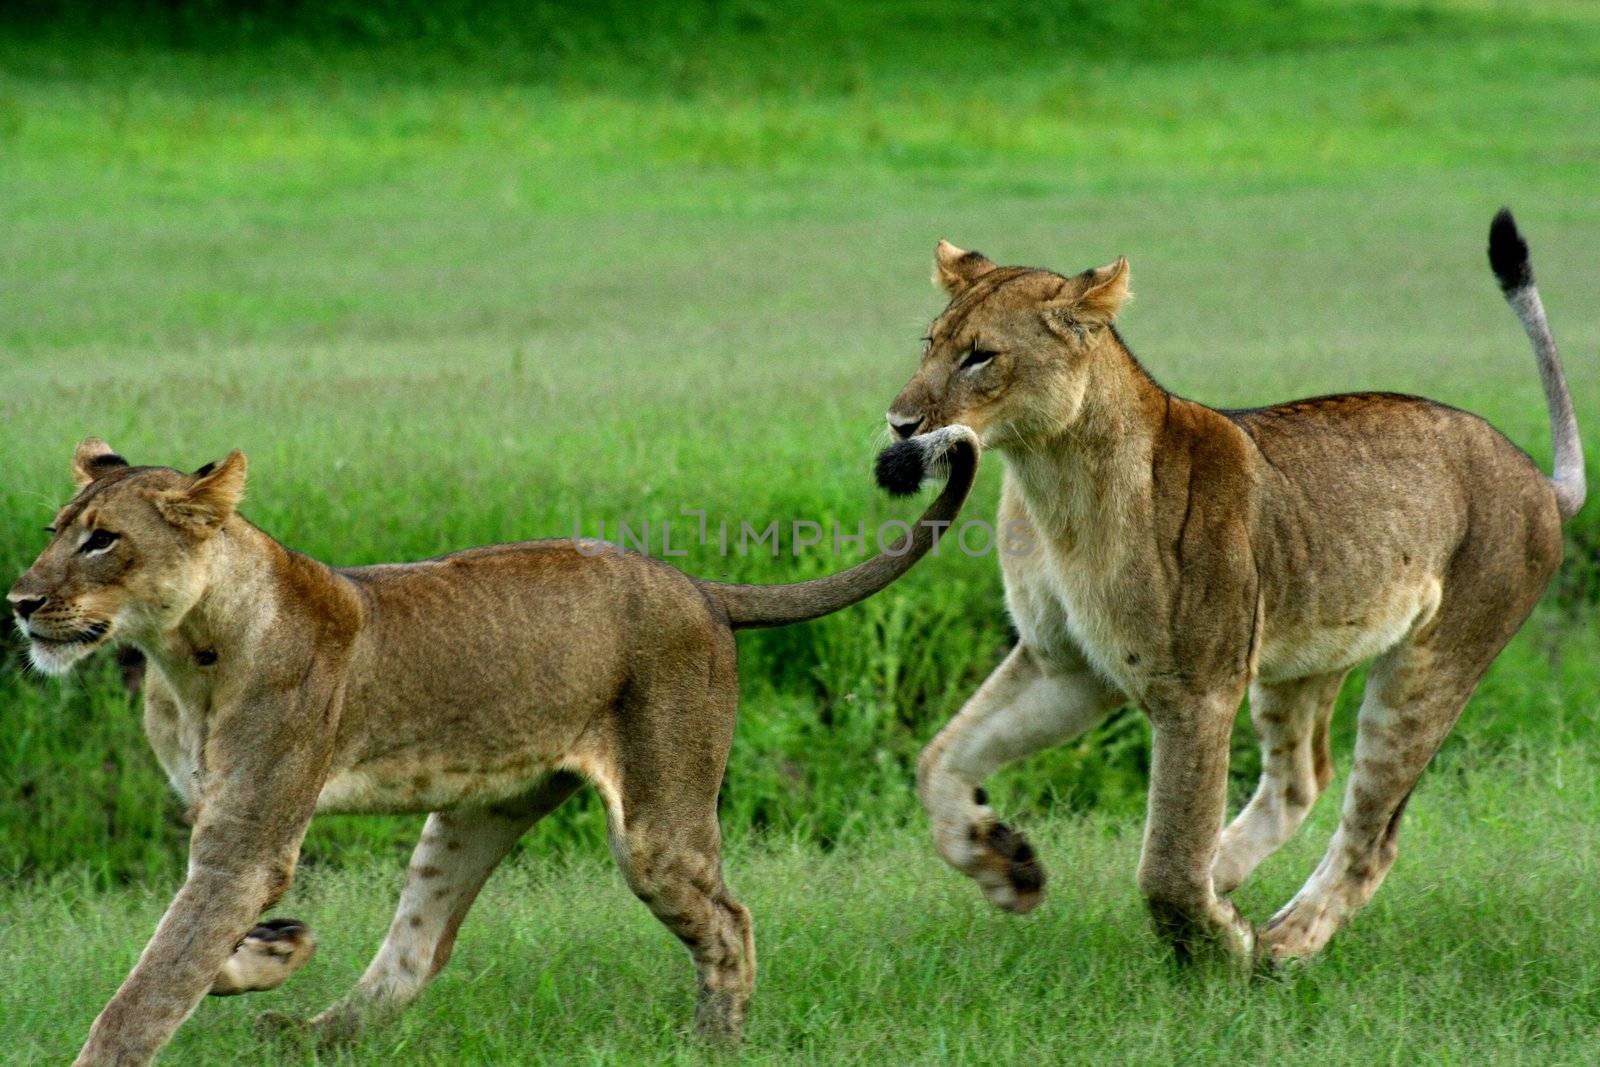 Zambia Lions